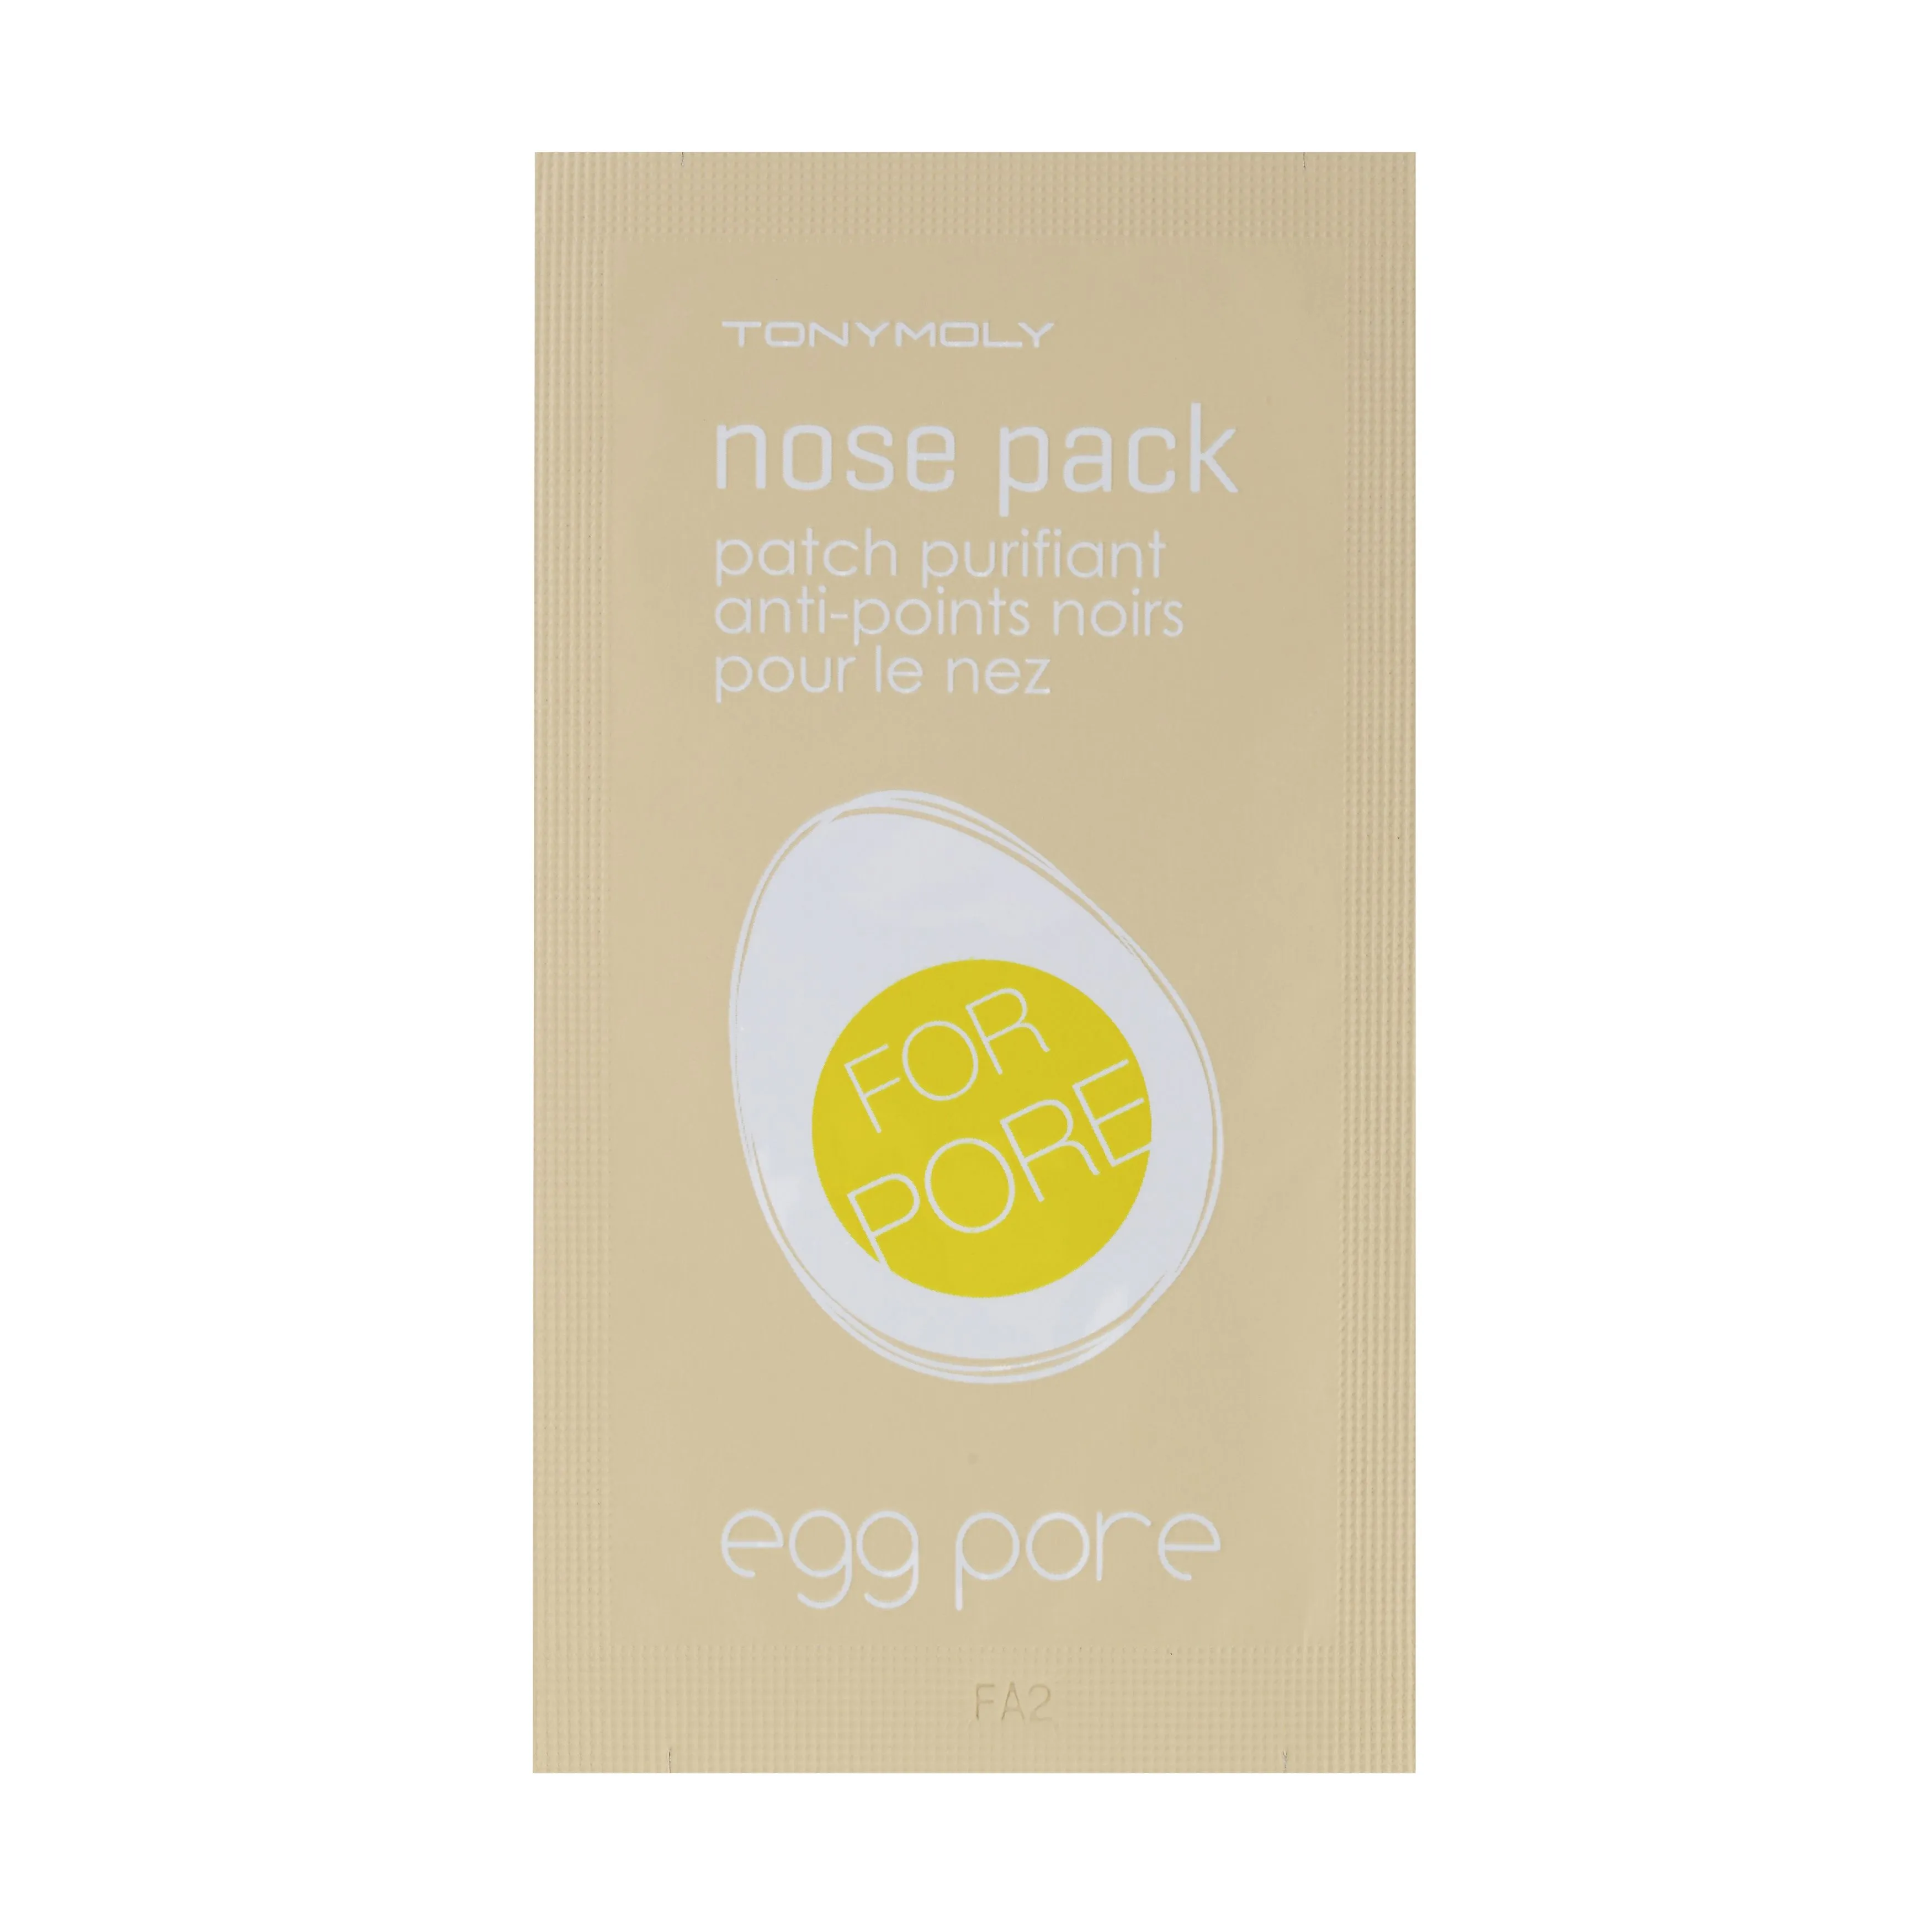 Tony Moly Egg Pore Nose Pack 1 sheet